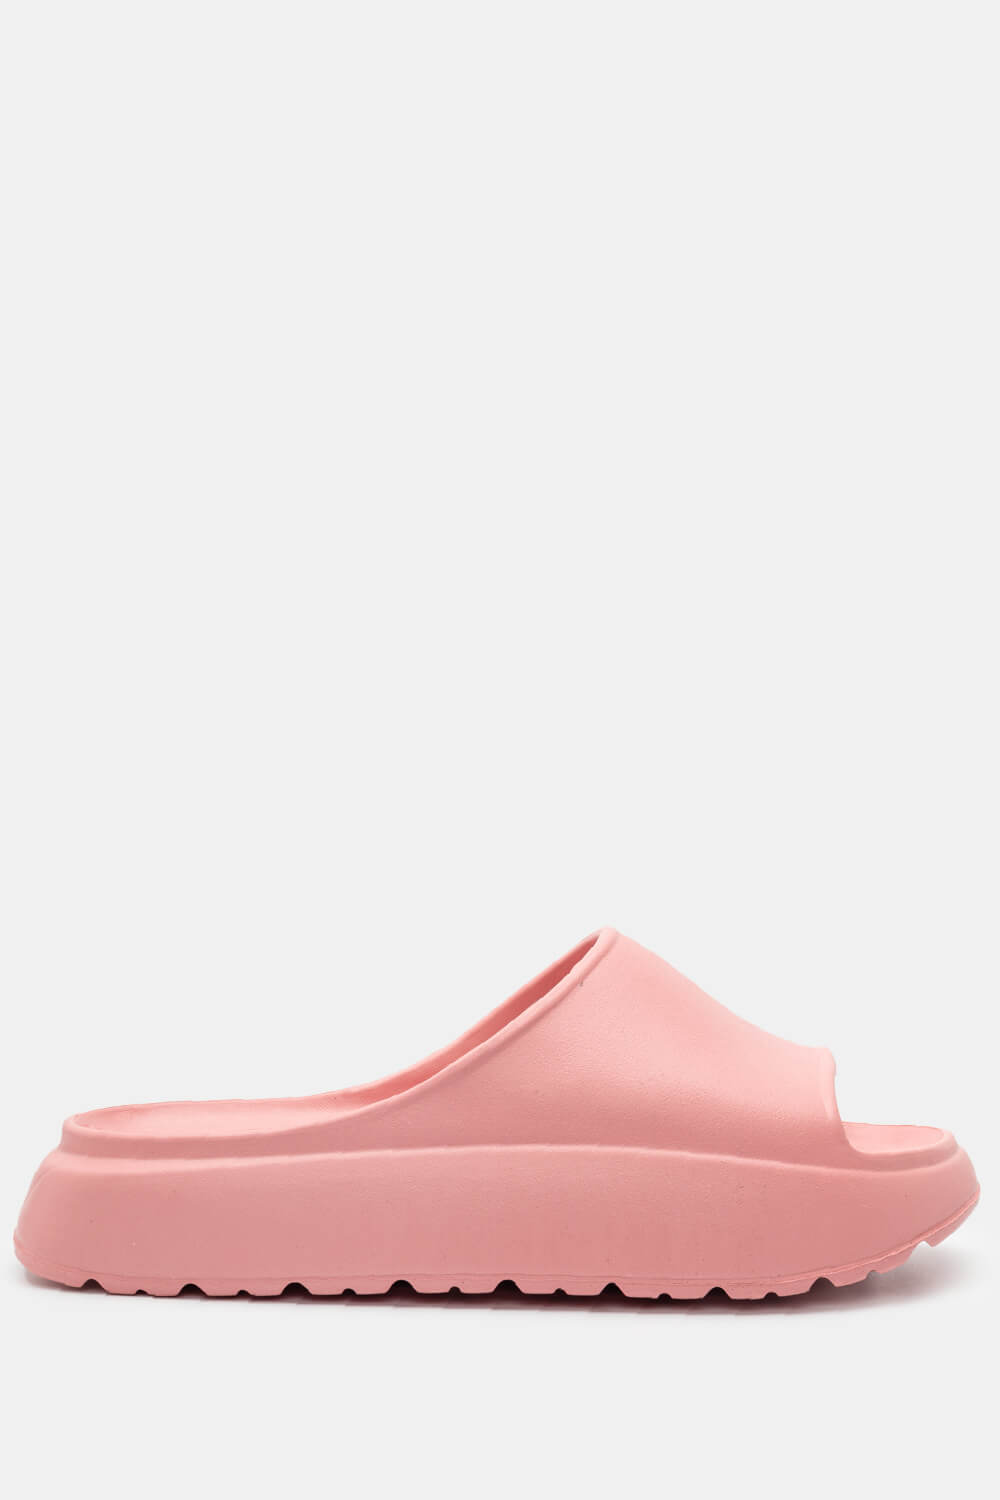 ΠΑΠΟΥΤΣΙΑ > Jelly Shoes Παντόφλες Δίσολες Μονόχρωμες - Ροζ